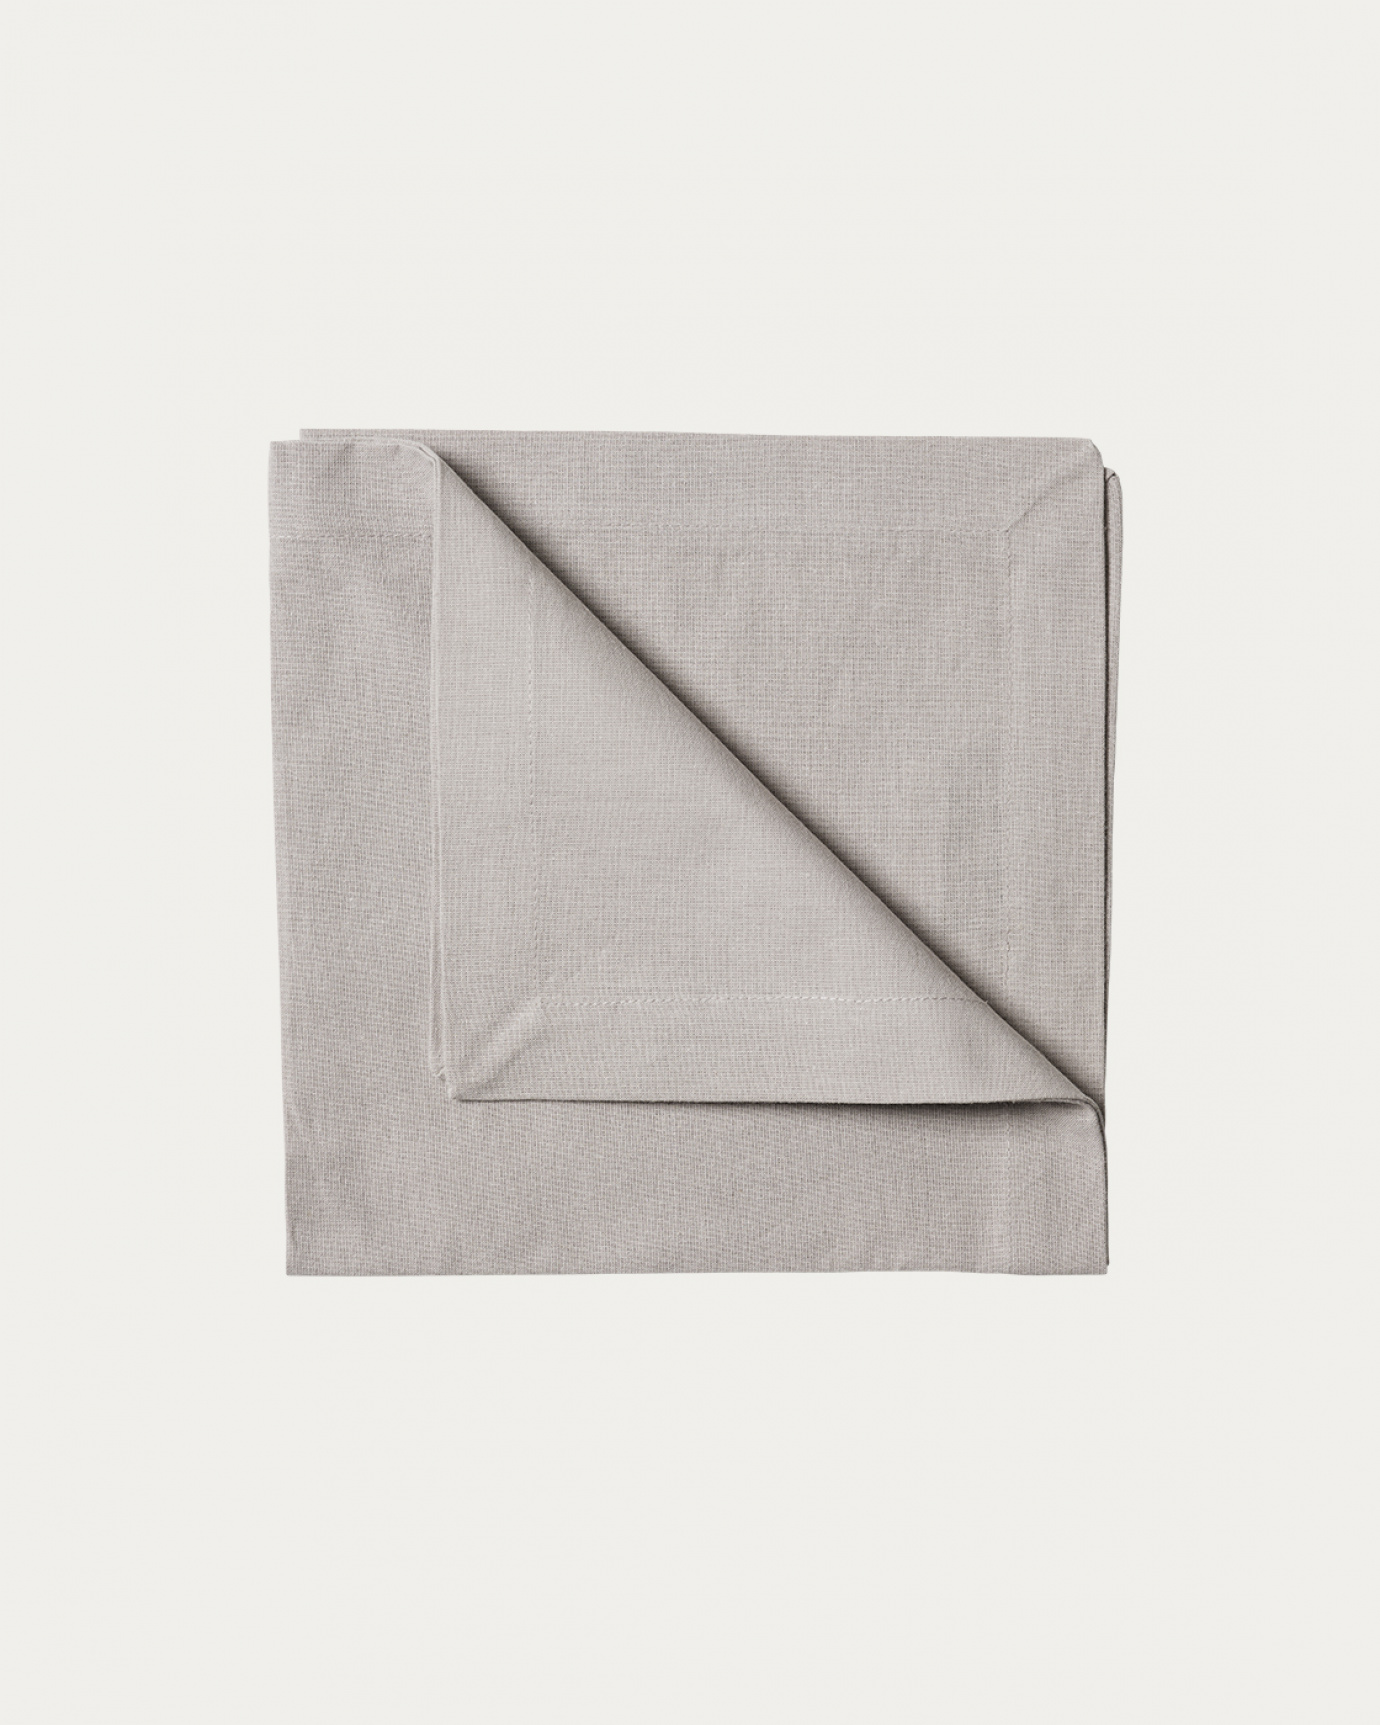 Immagine prodotto grigio chiaro ROBERT tovagliolo in morbido cotone di LINUM DESIGN. Dimensioni 45x45 cm e venduto in 4-pezzi.